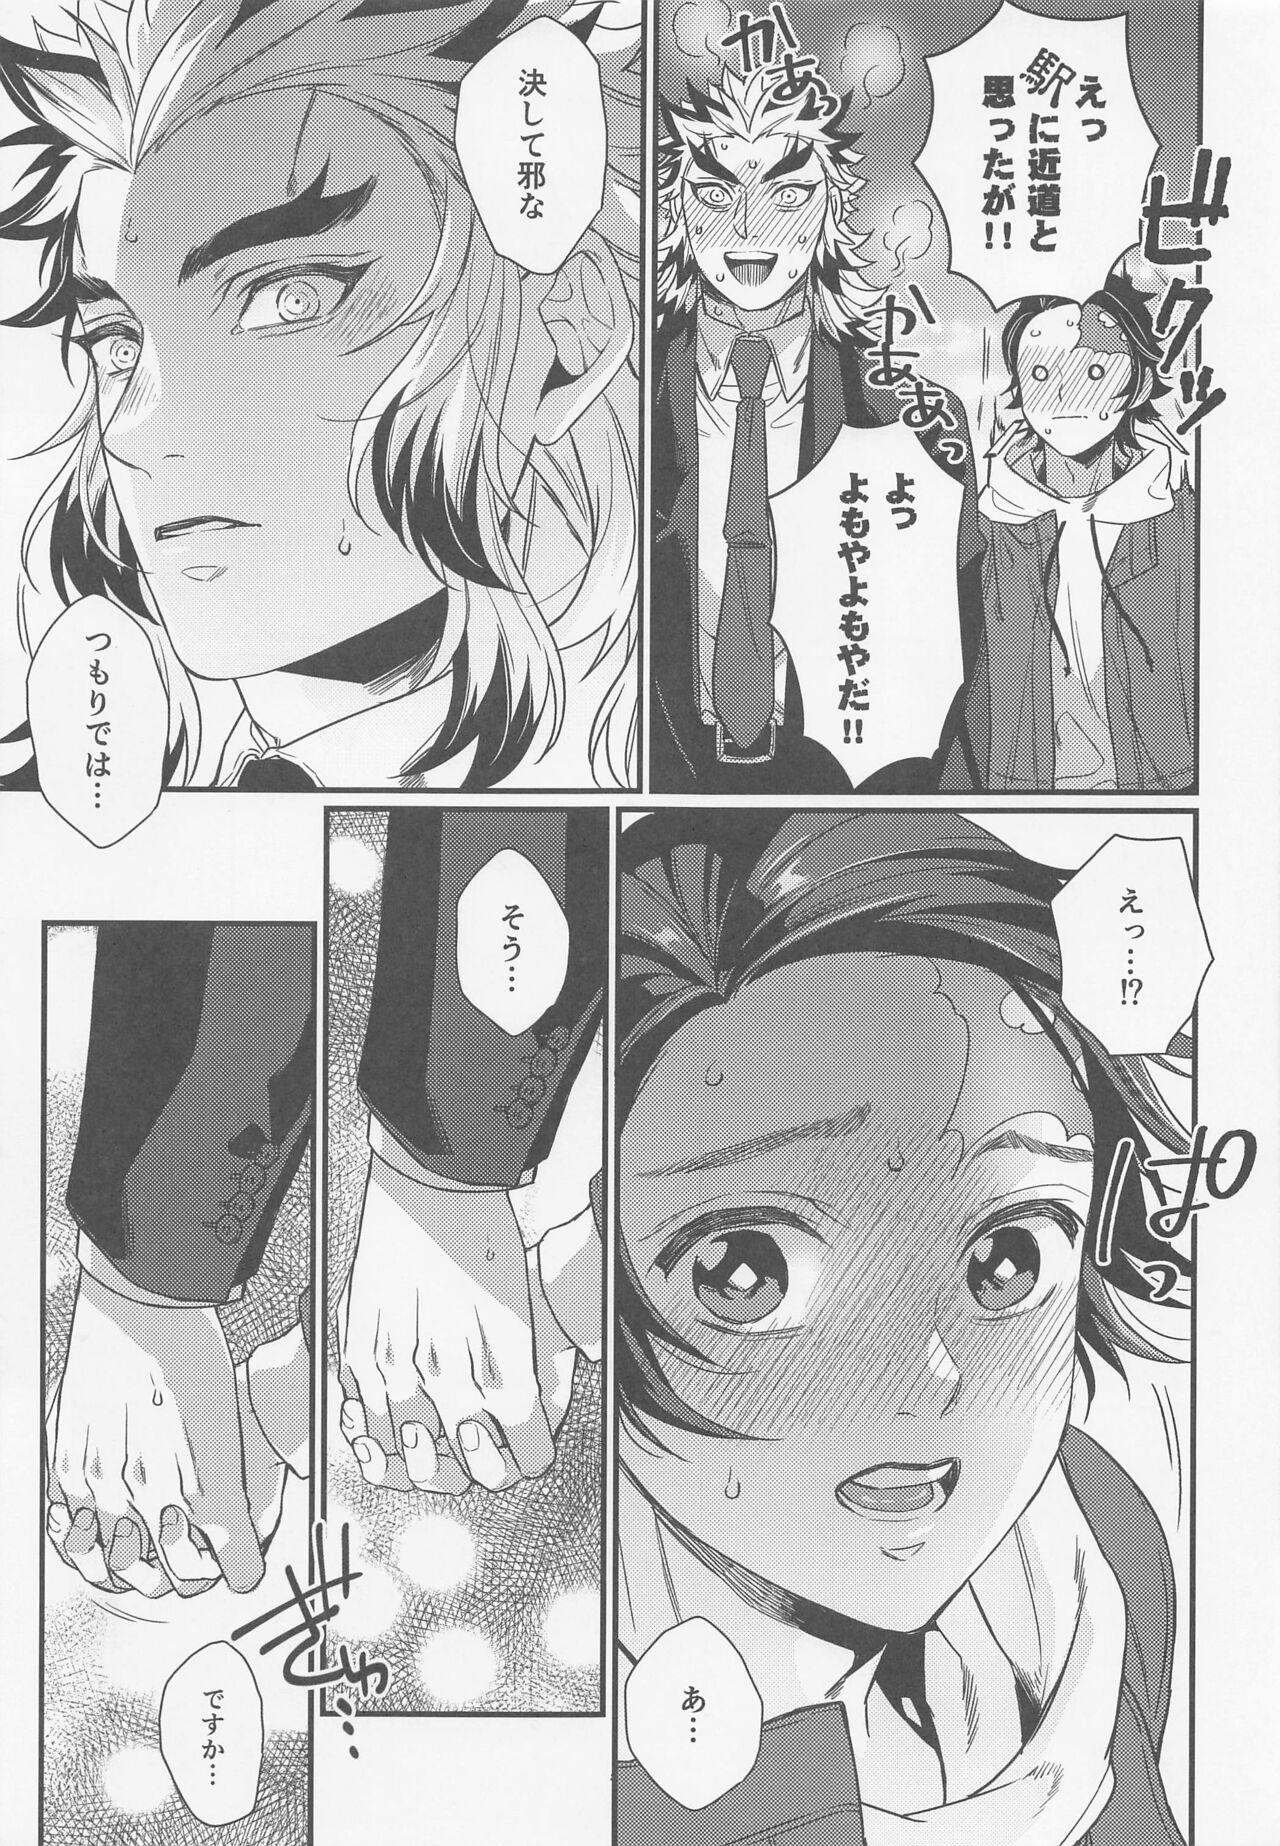 Small Tits sukida、shonen、daisukida - Kimetsu no yaiba | demon slayer Gay Party - Page 6